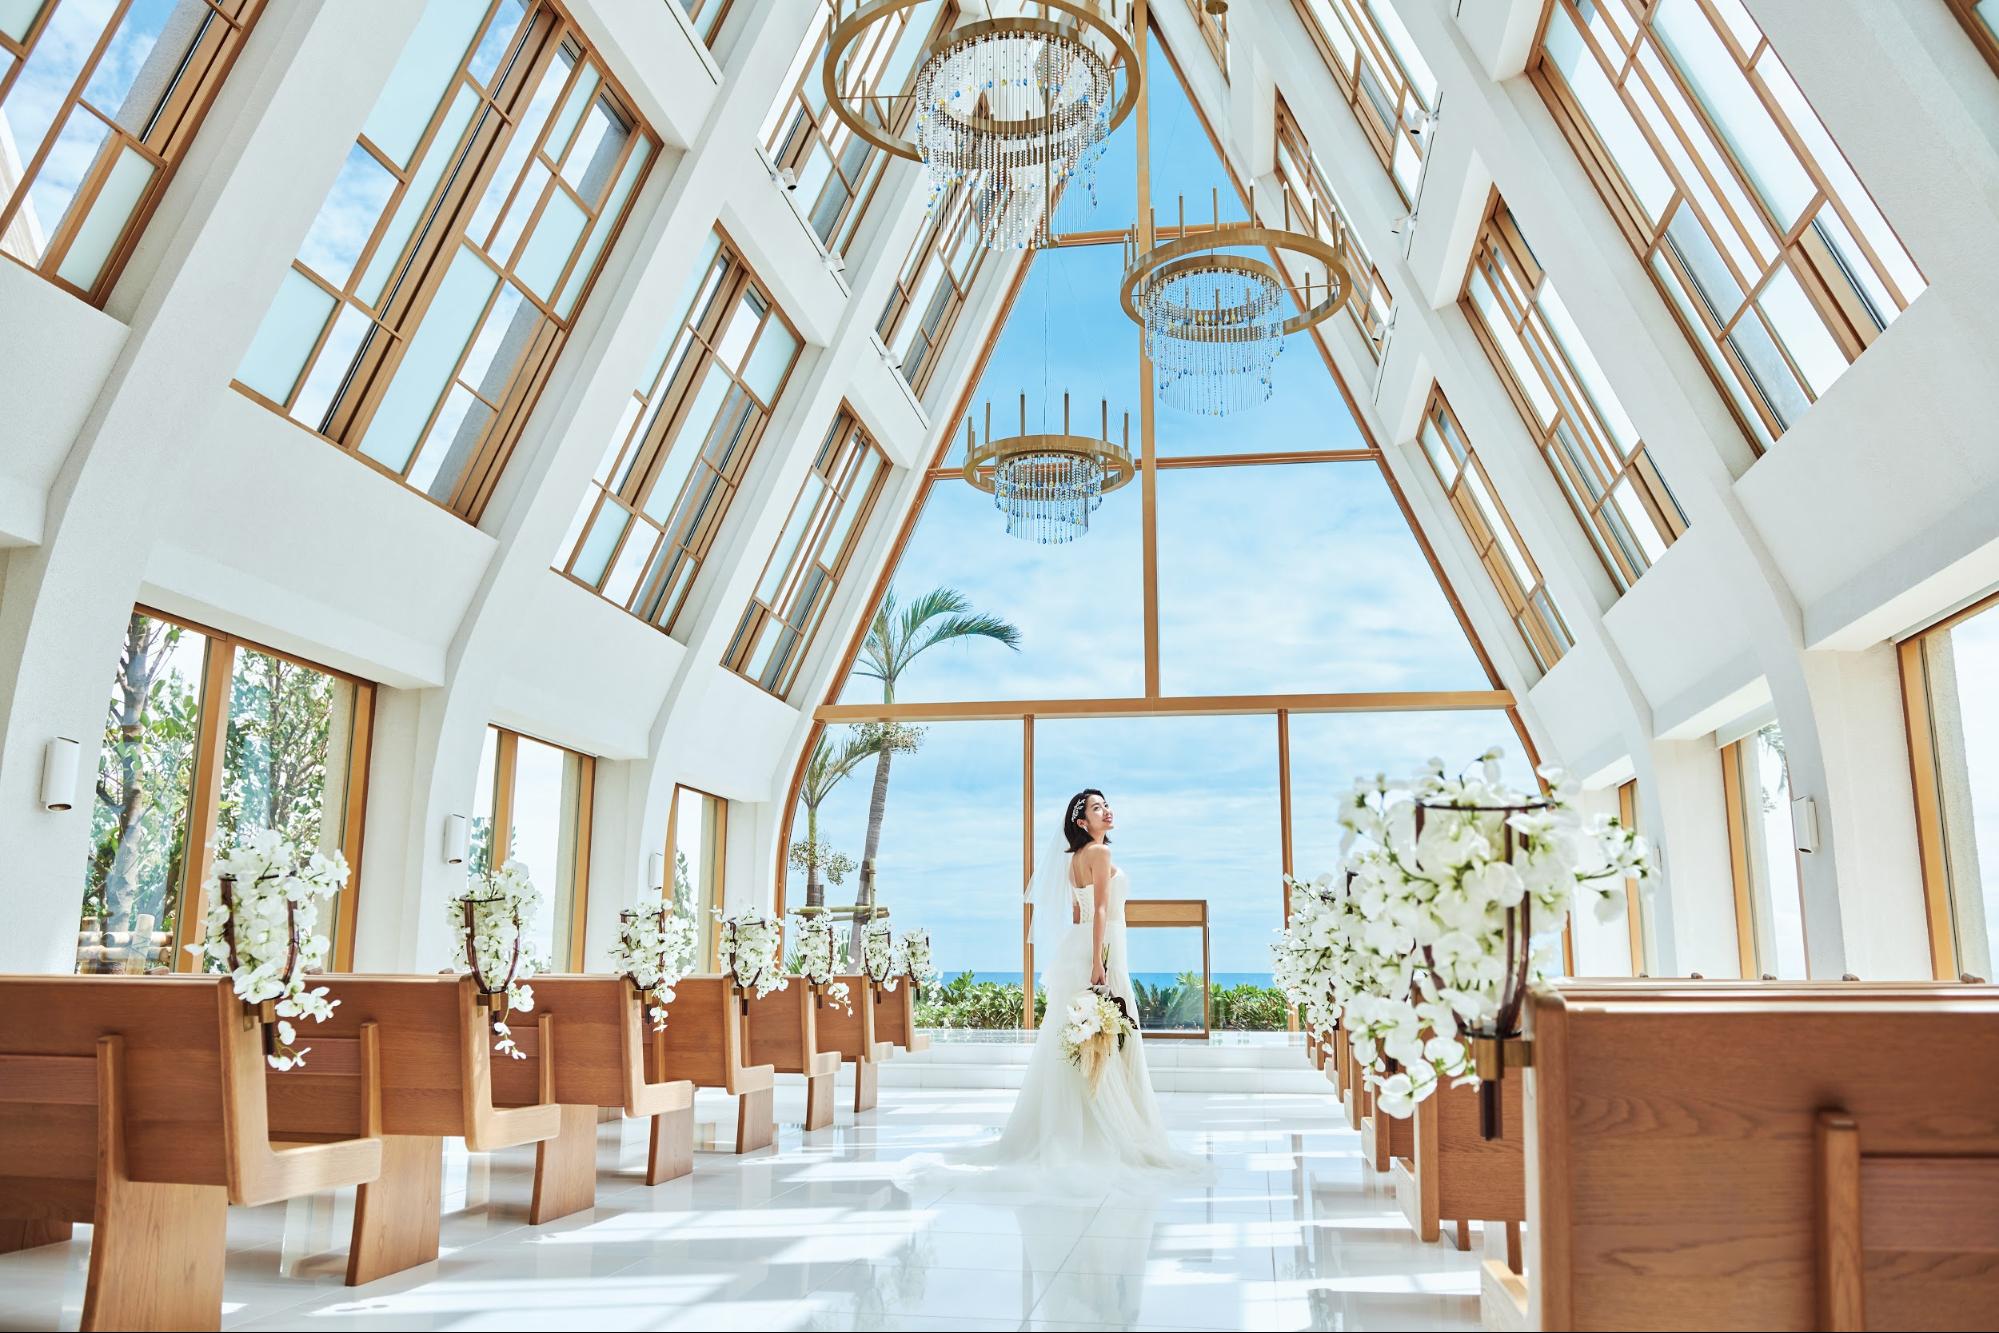 2020最新版 沖縄の結婚式場 海が見えるチャペル 人気ランキング10 沖縄ウエディングまとめ 沖縄リゾート専門の結婚式情報サイト